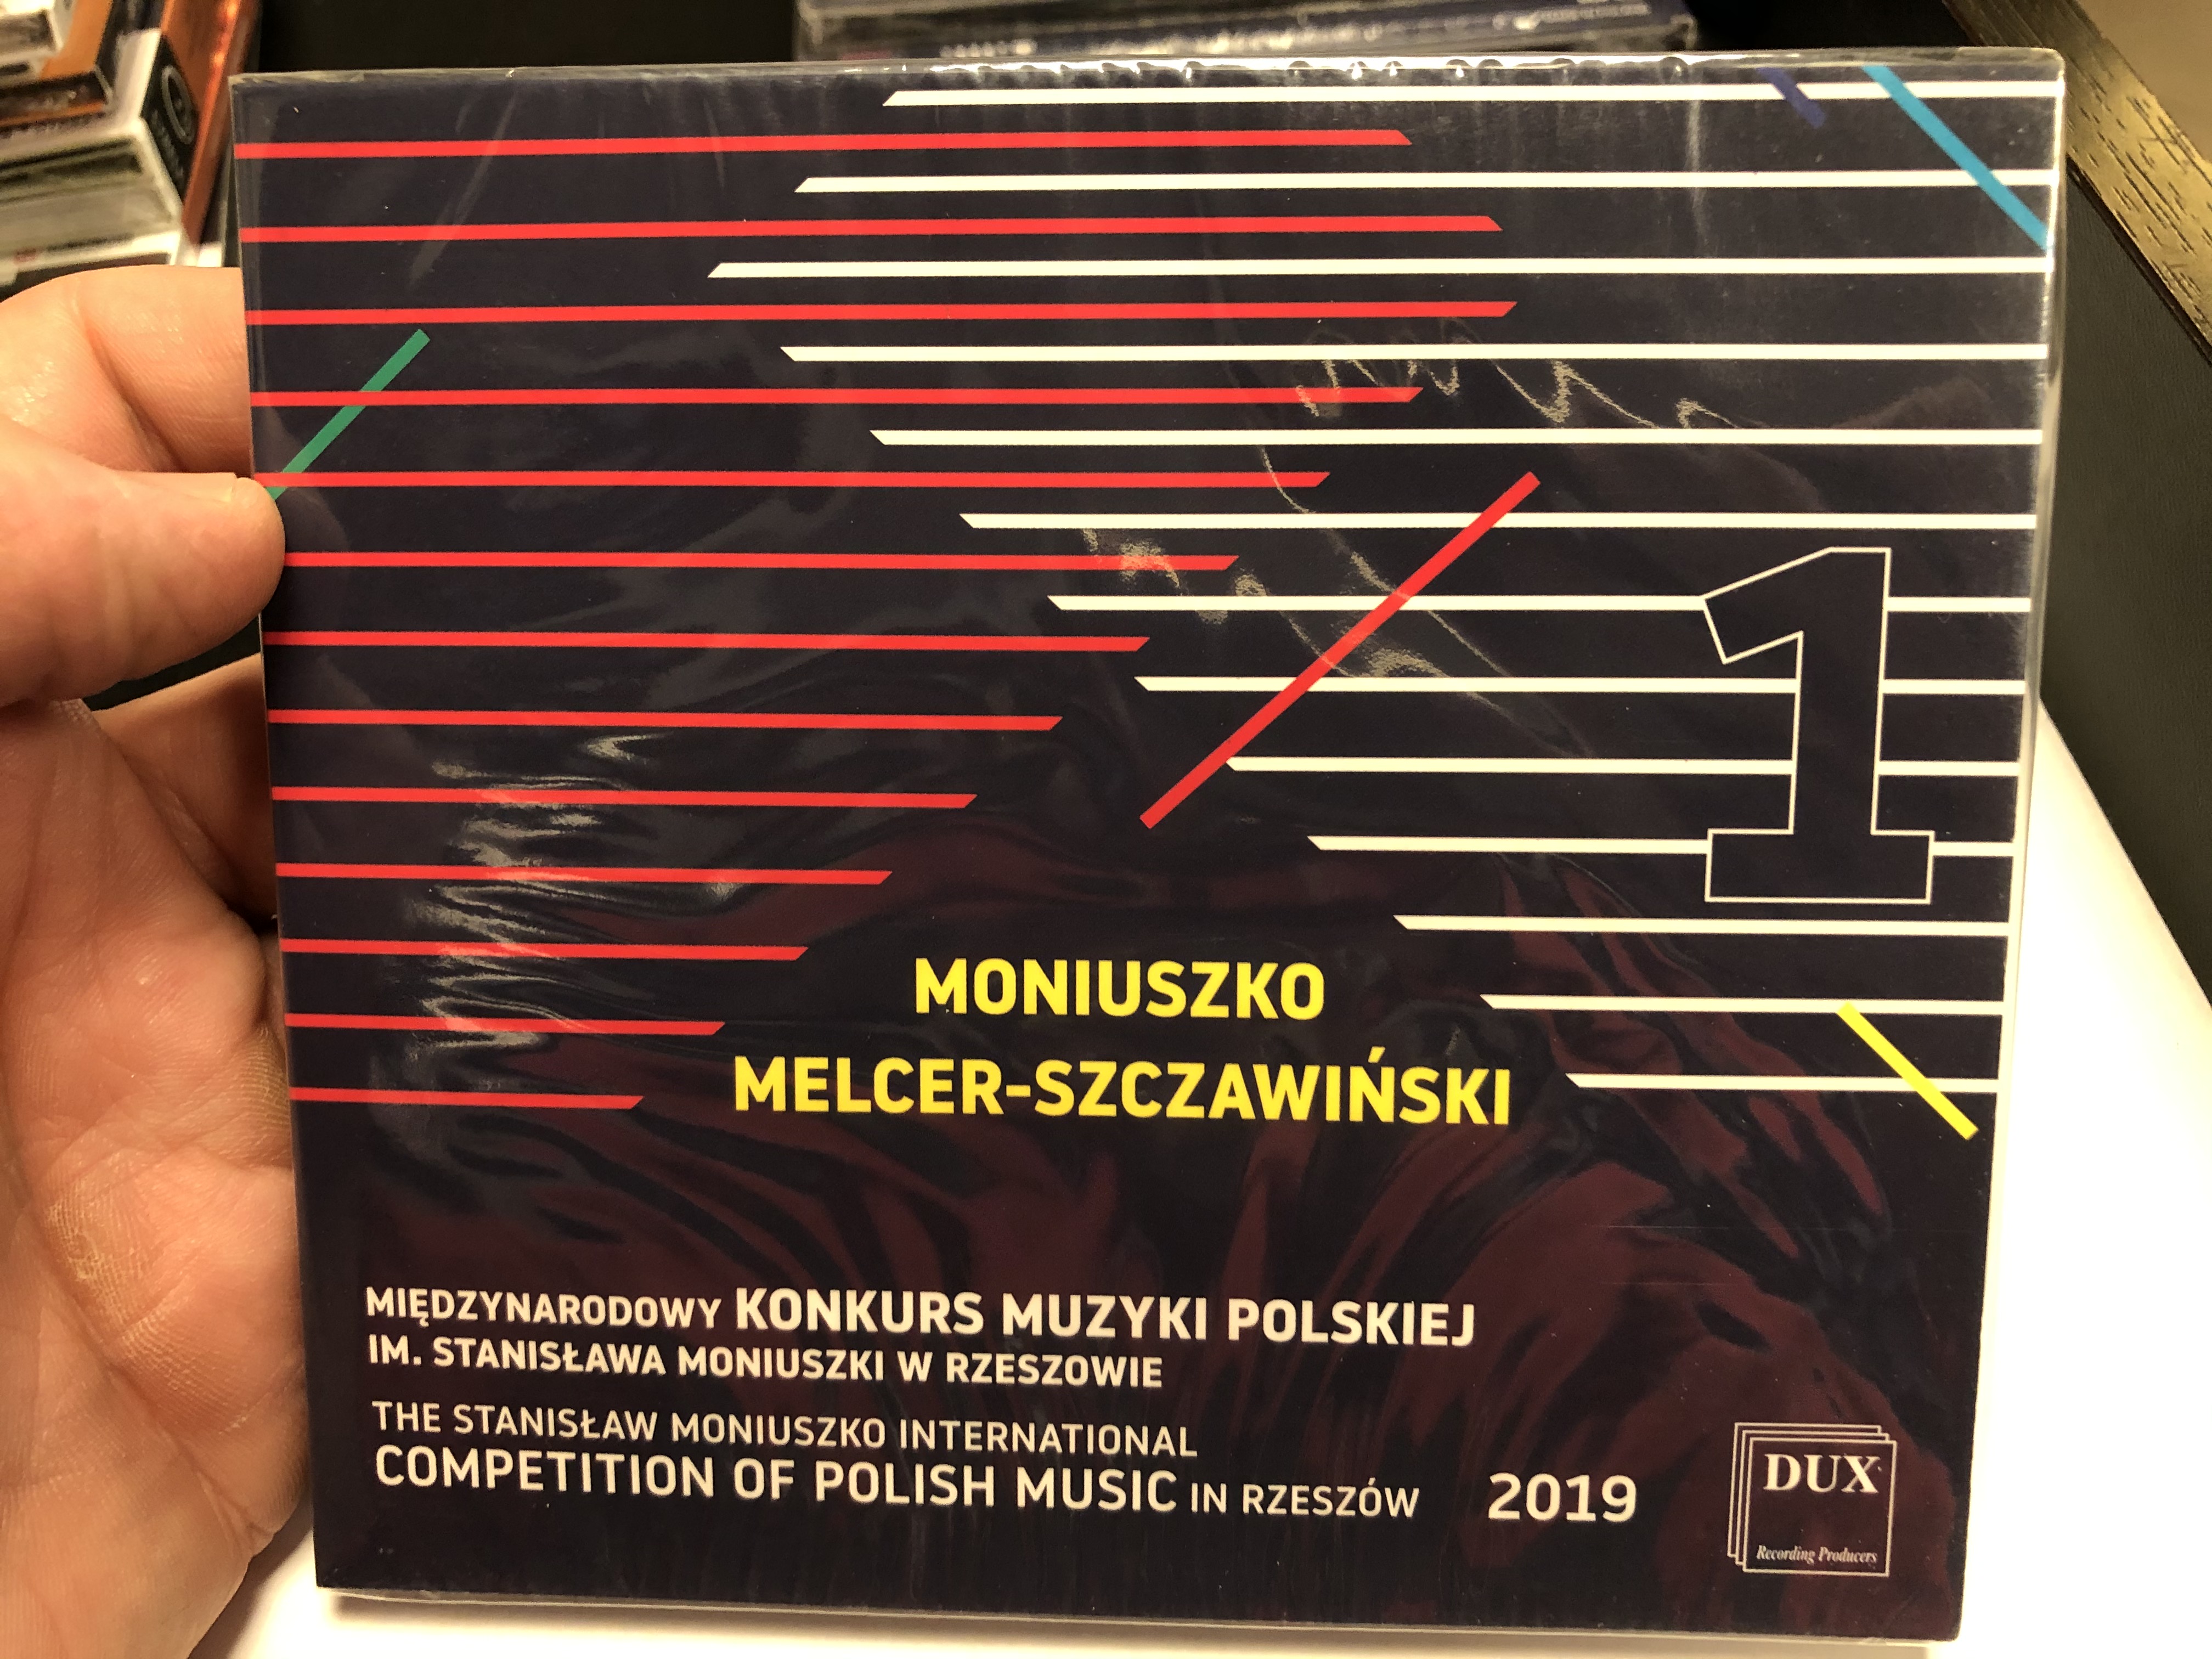 moniuszko-melcer-szczawinski-1-miedzynarodowy-konkurs-muzyki-polskiej-im.-stanislawa-moniuszki-w-rzeszowie-the-stanislaw-moniuszko-international-competition-of-polish-music-in-rzeszow-20-1-.jpg